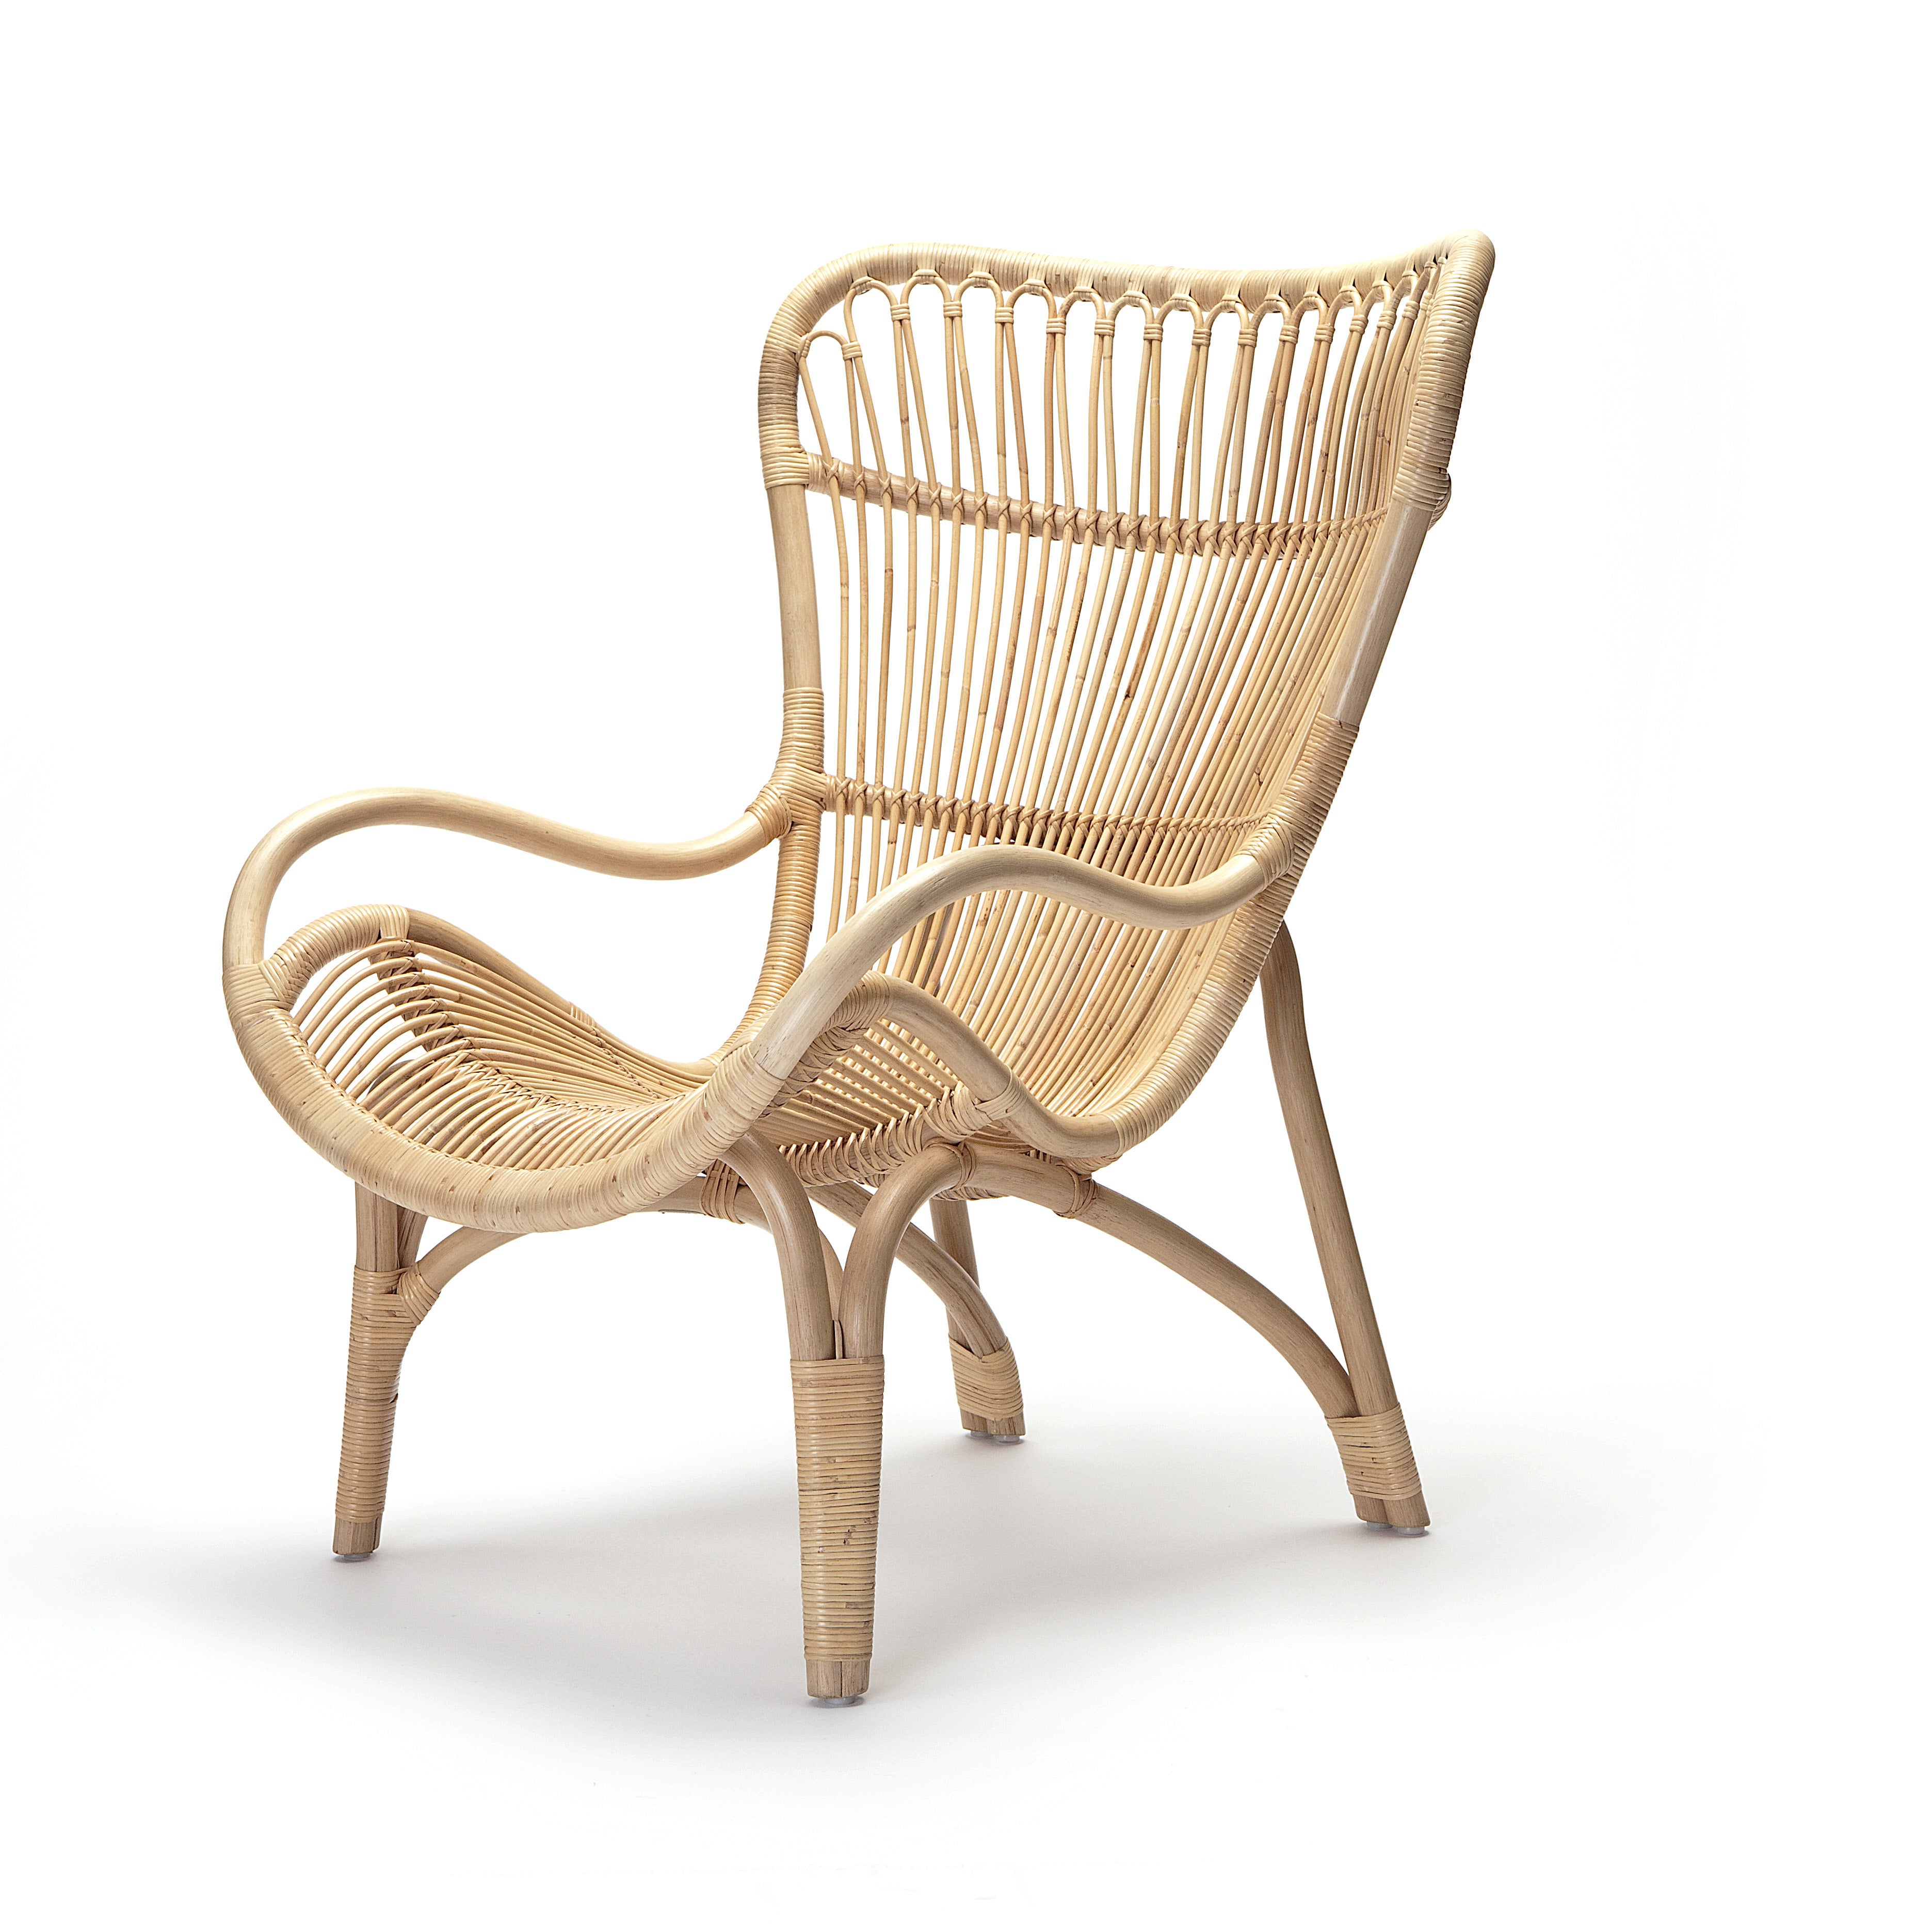 C110 stoel – By Mölle